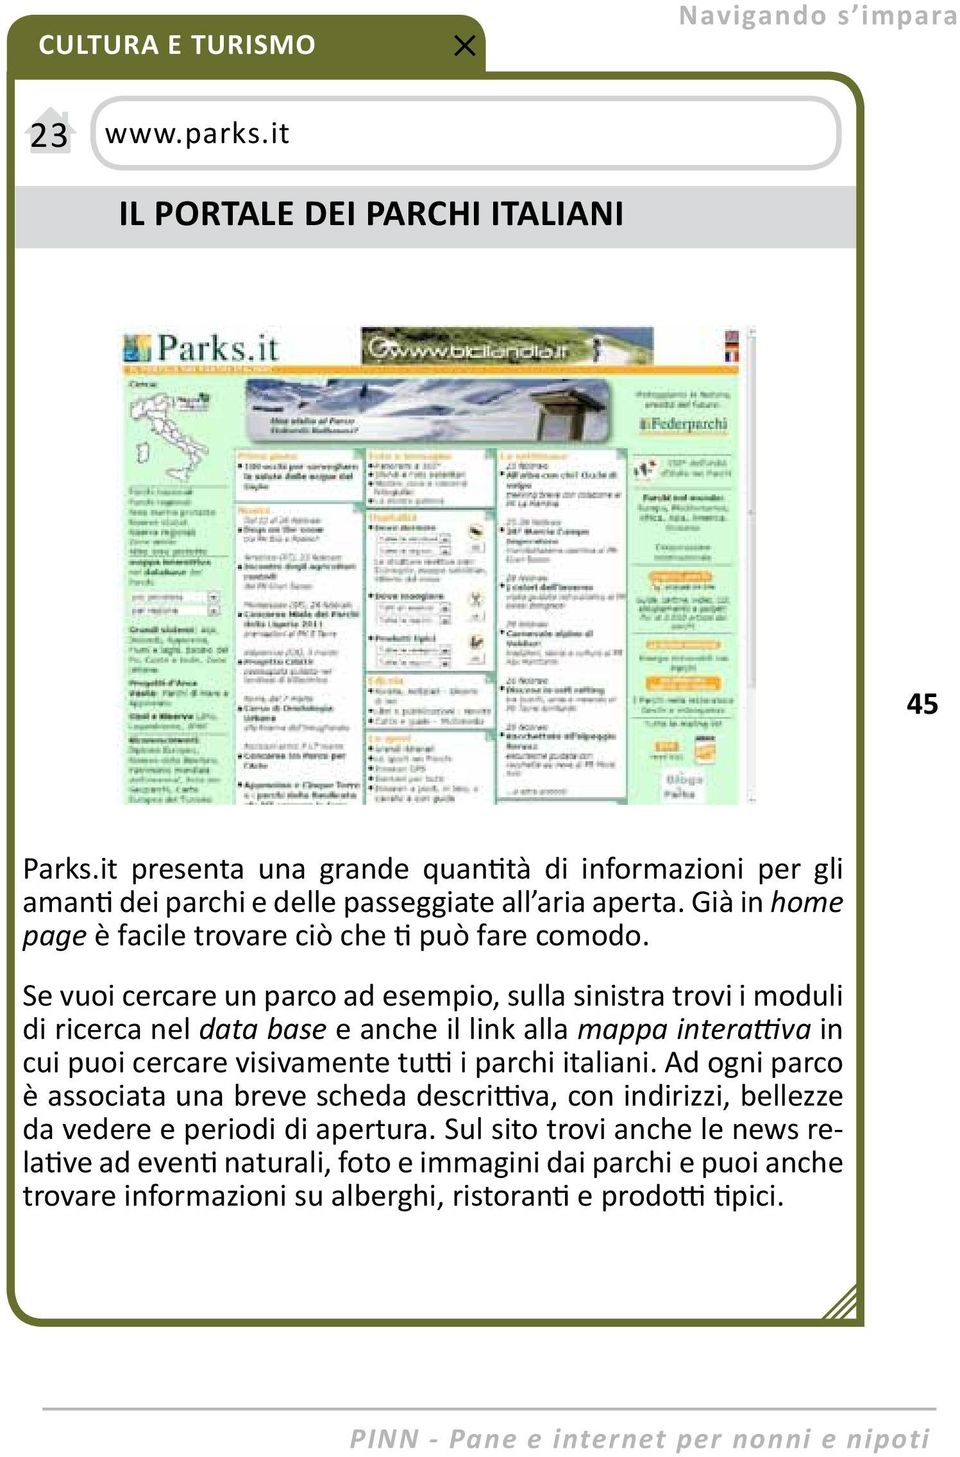 Se vuoi cercare un parco ad esempio, sulla sinistra trovi i moduli di ricerca nel data base e anche il link alla mappa interattiva in cui puoi cercare visivamente tutti i parchi